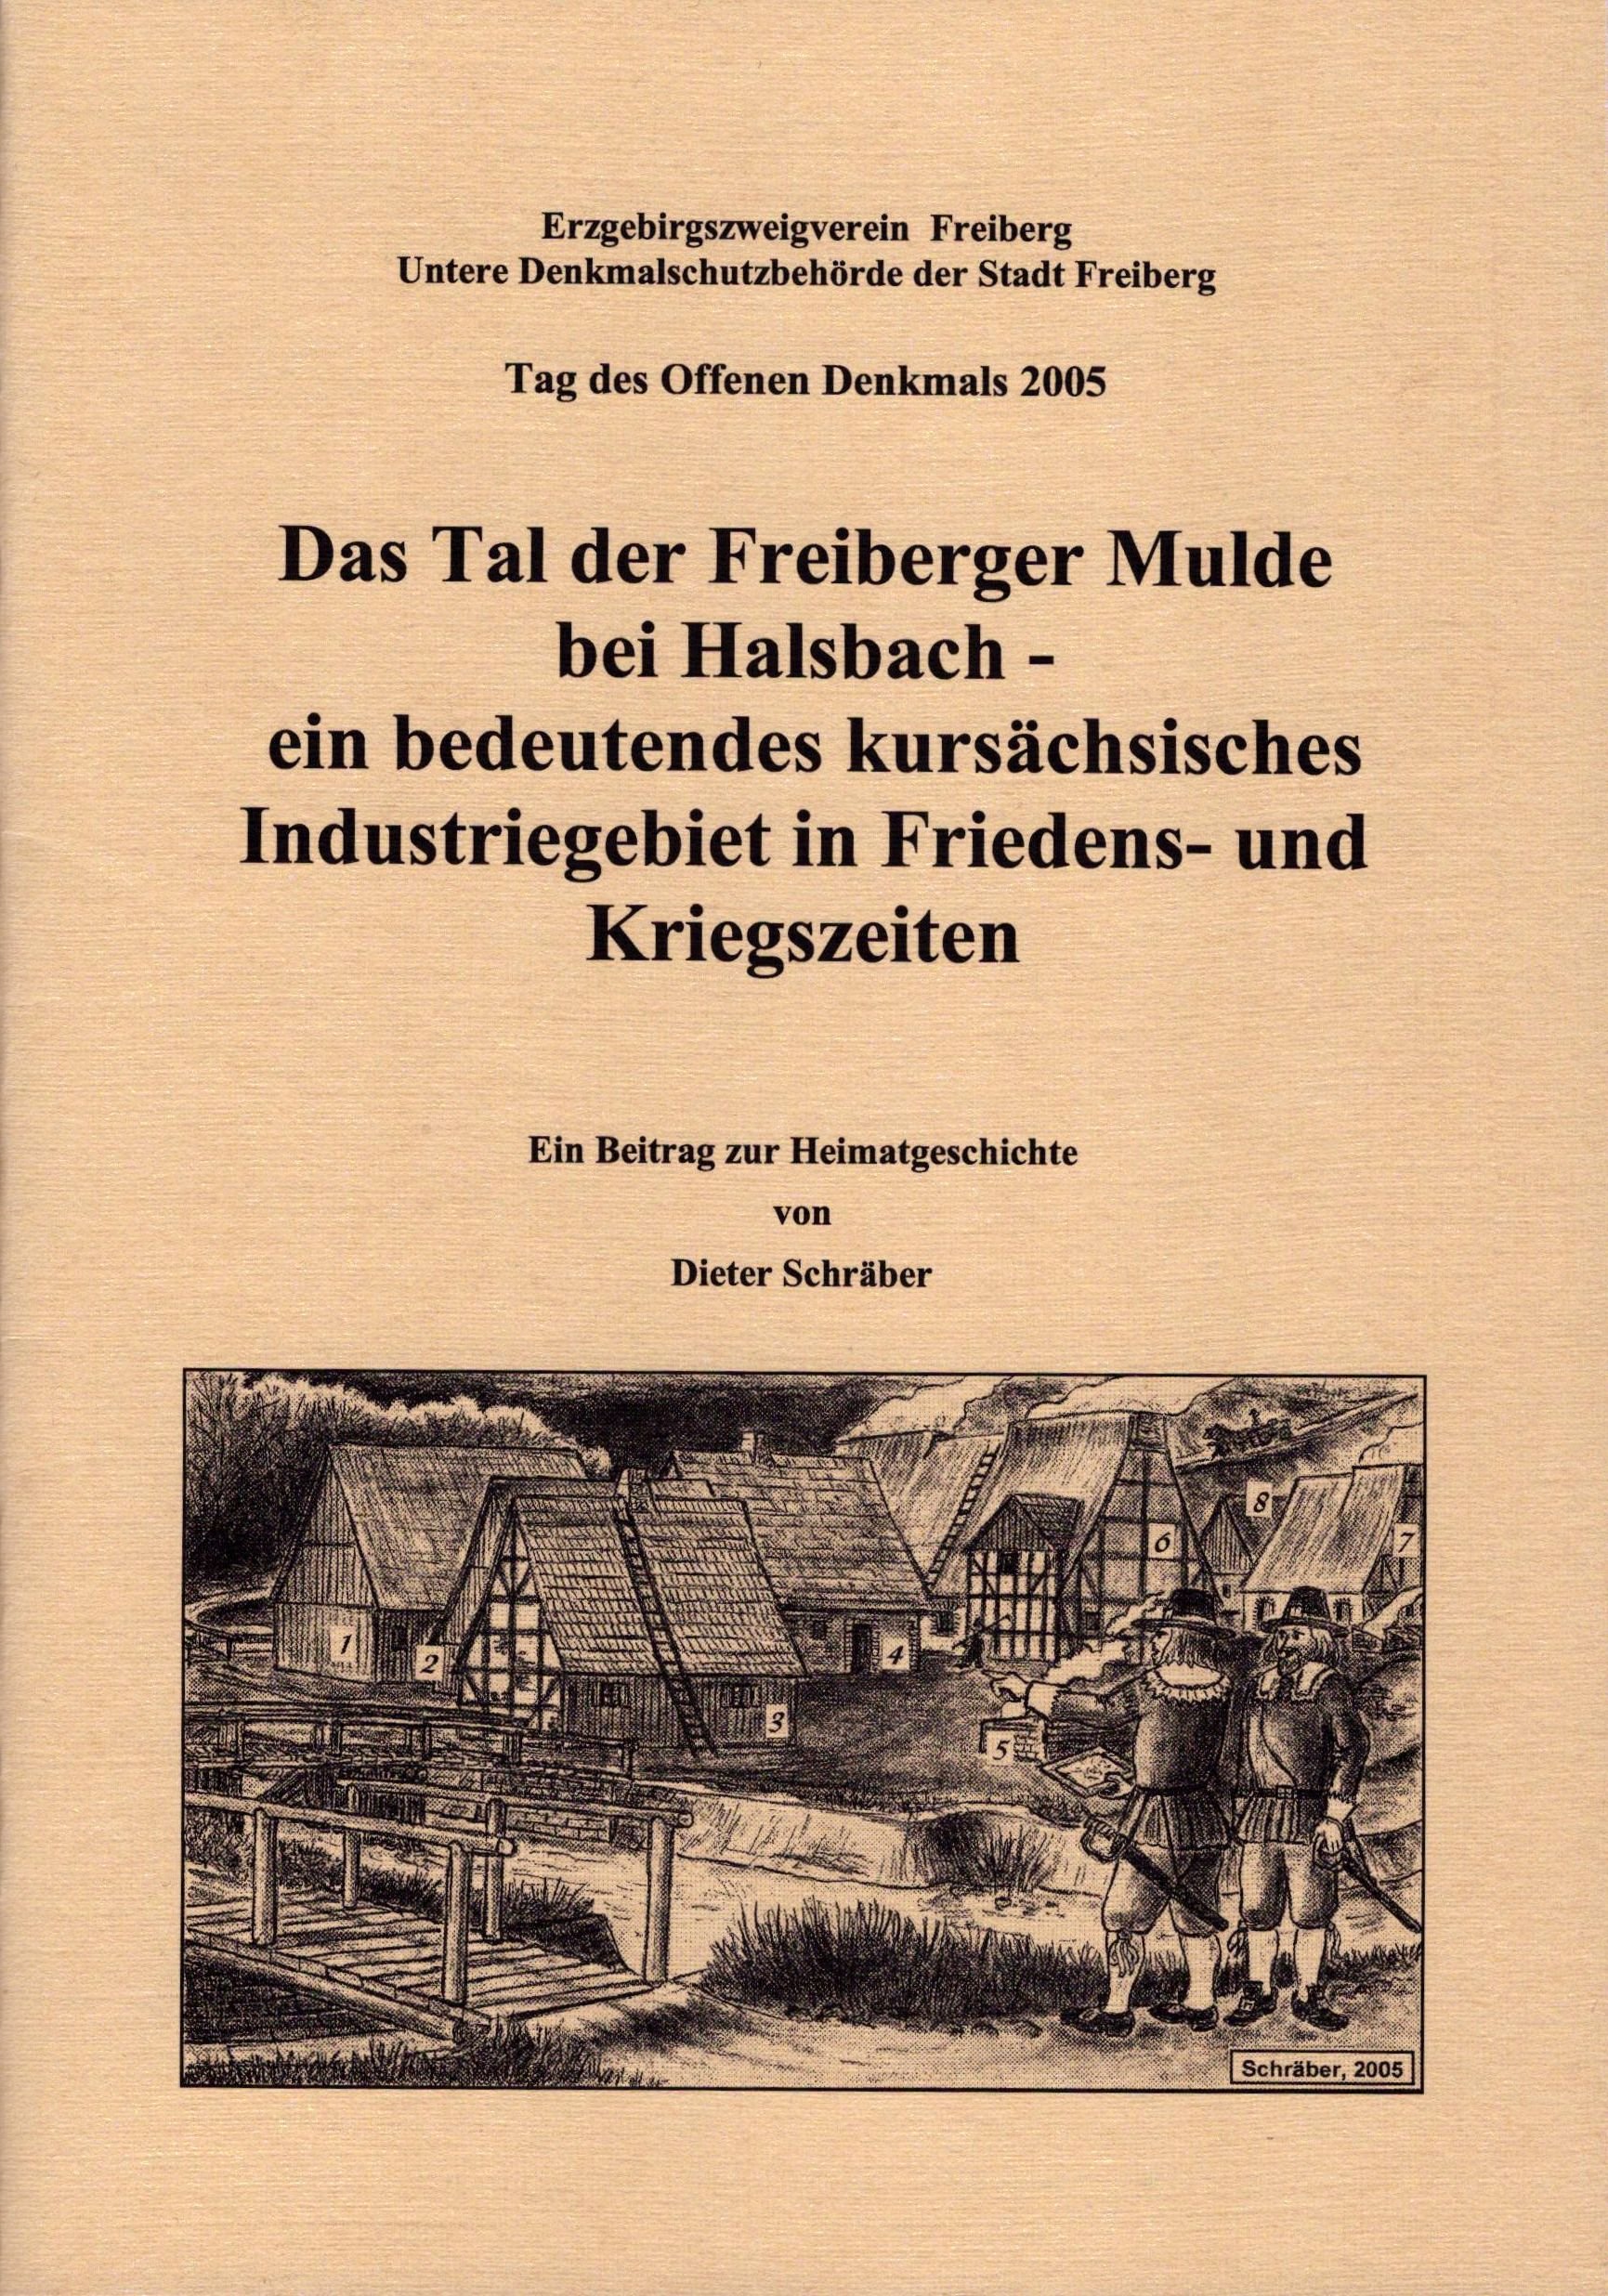 Das Tal der Freiberger Mulde bei Halsbach (Archiv SAXONIA-FREIBERG-STIFTUNG CC BY-NC-SA)